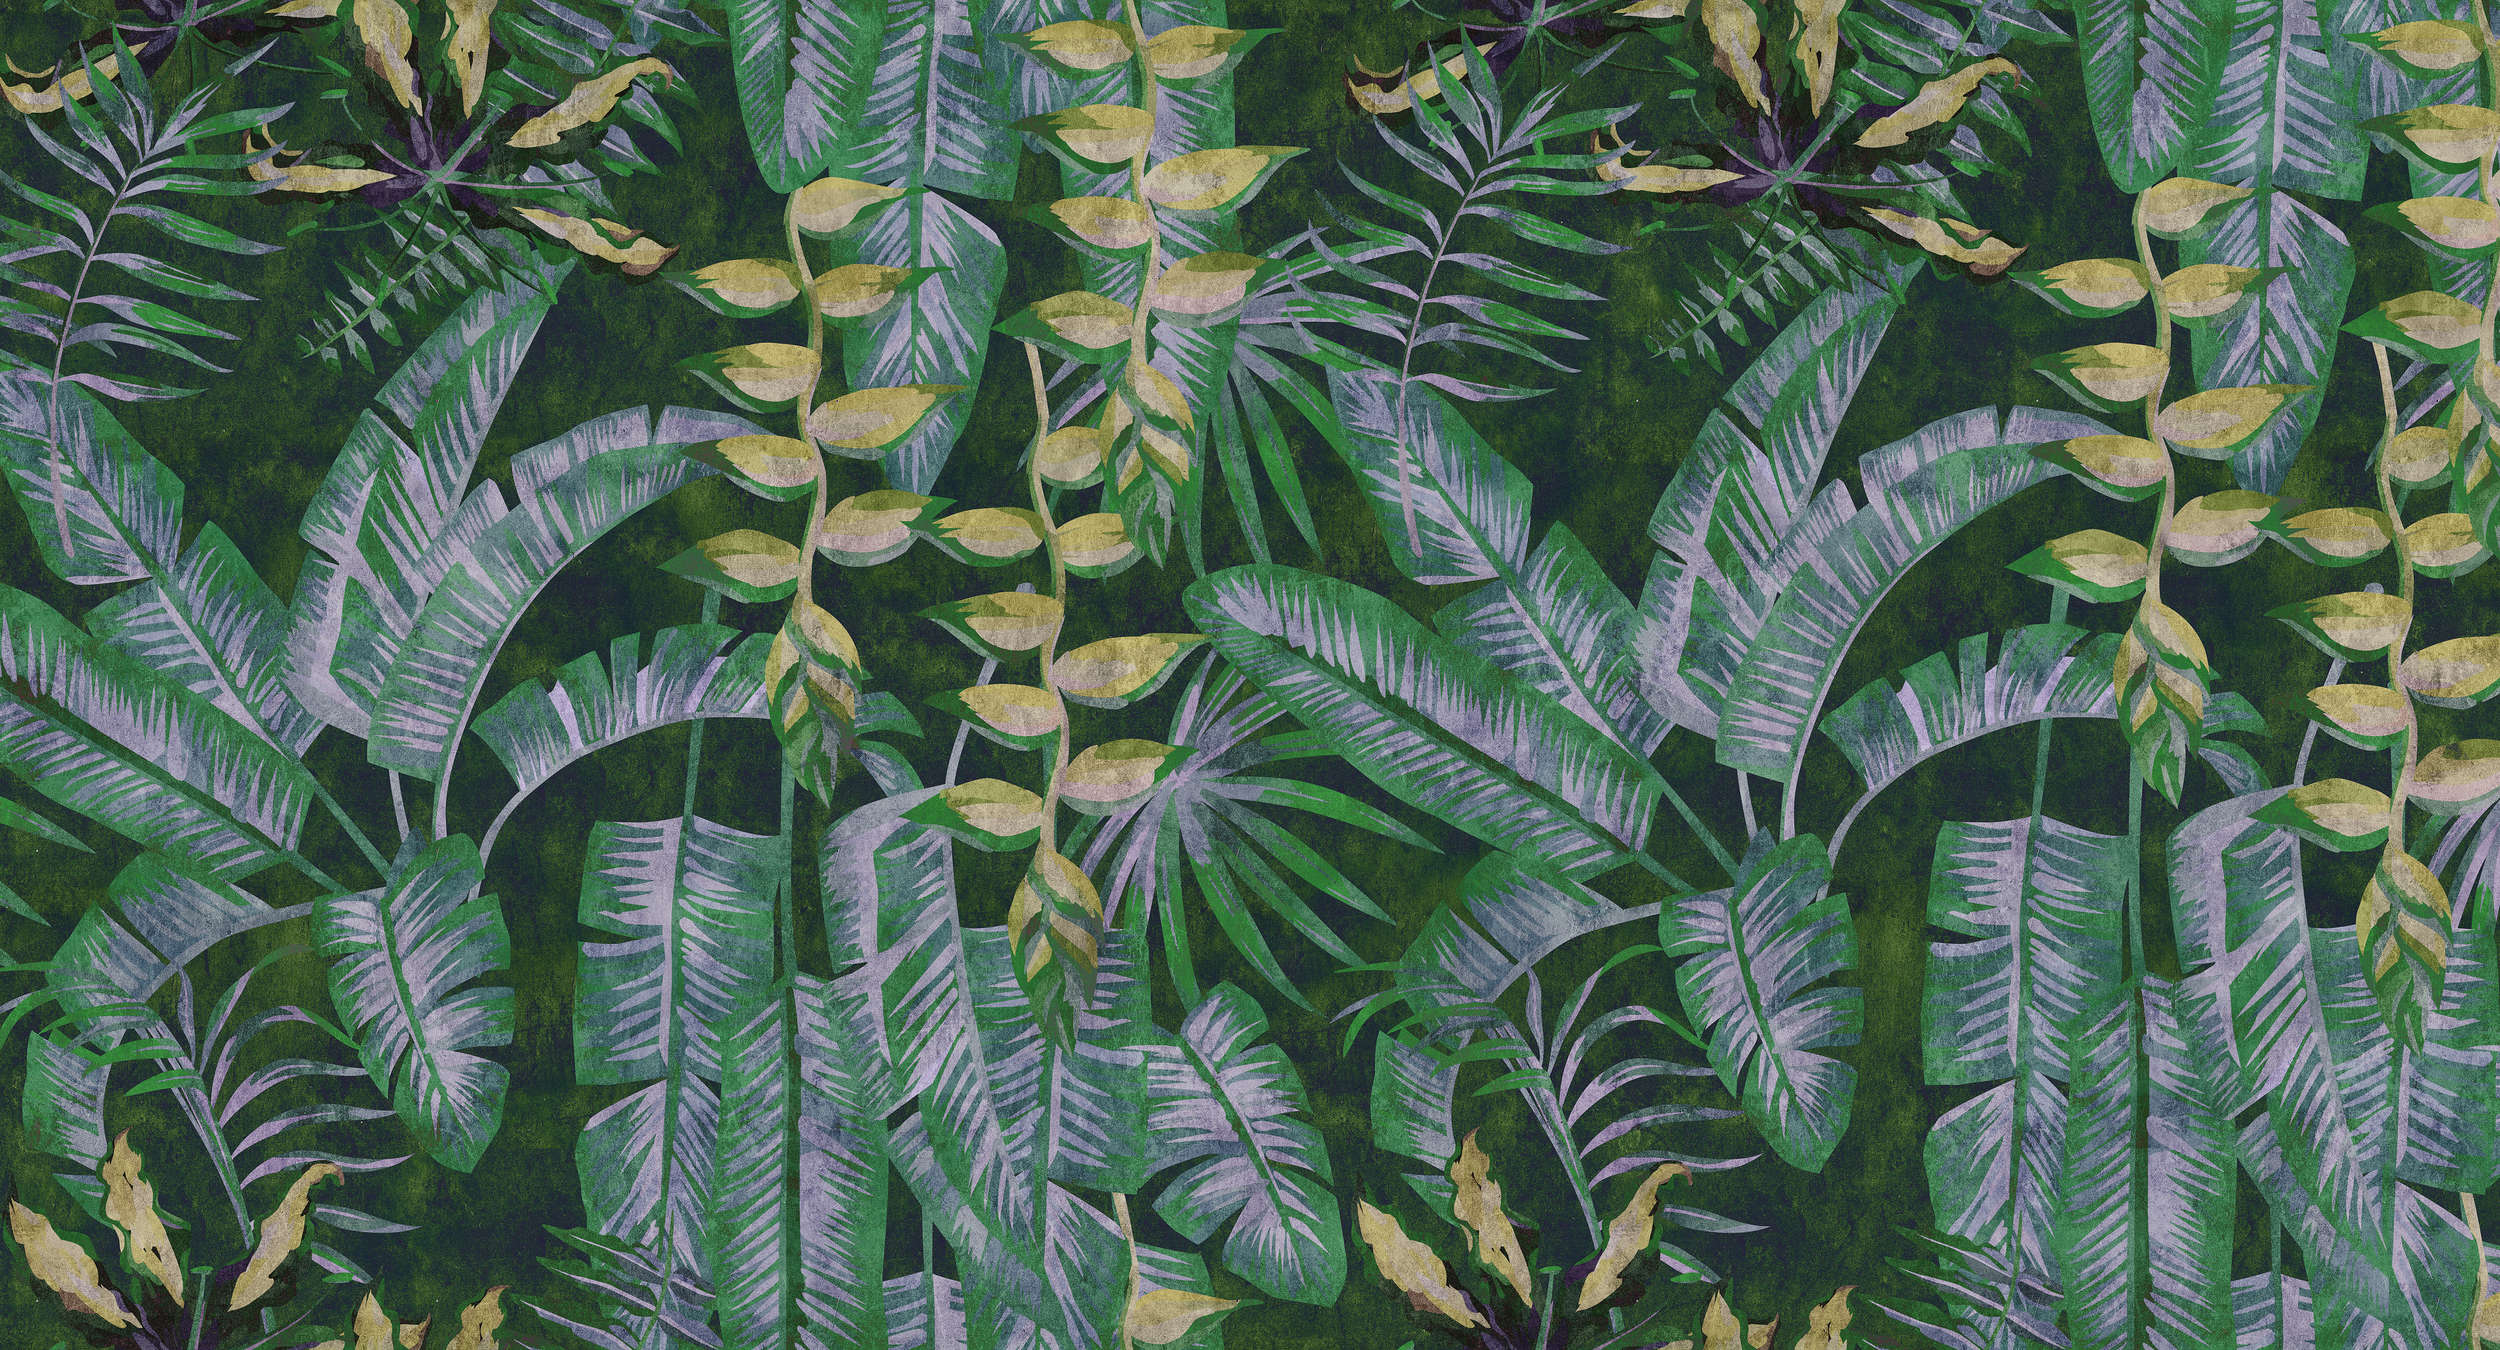             Tropicana 2 - Carta da parati a stampa digitale con piante tropicali in struttura di carta assorbente - giallo, verde | struttura in tessuto non tessuto
        